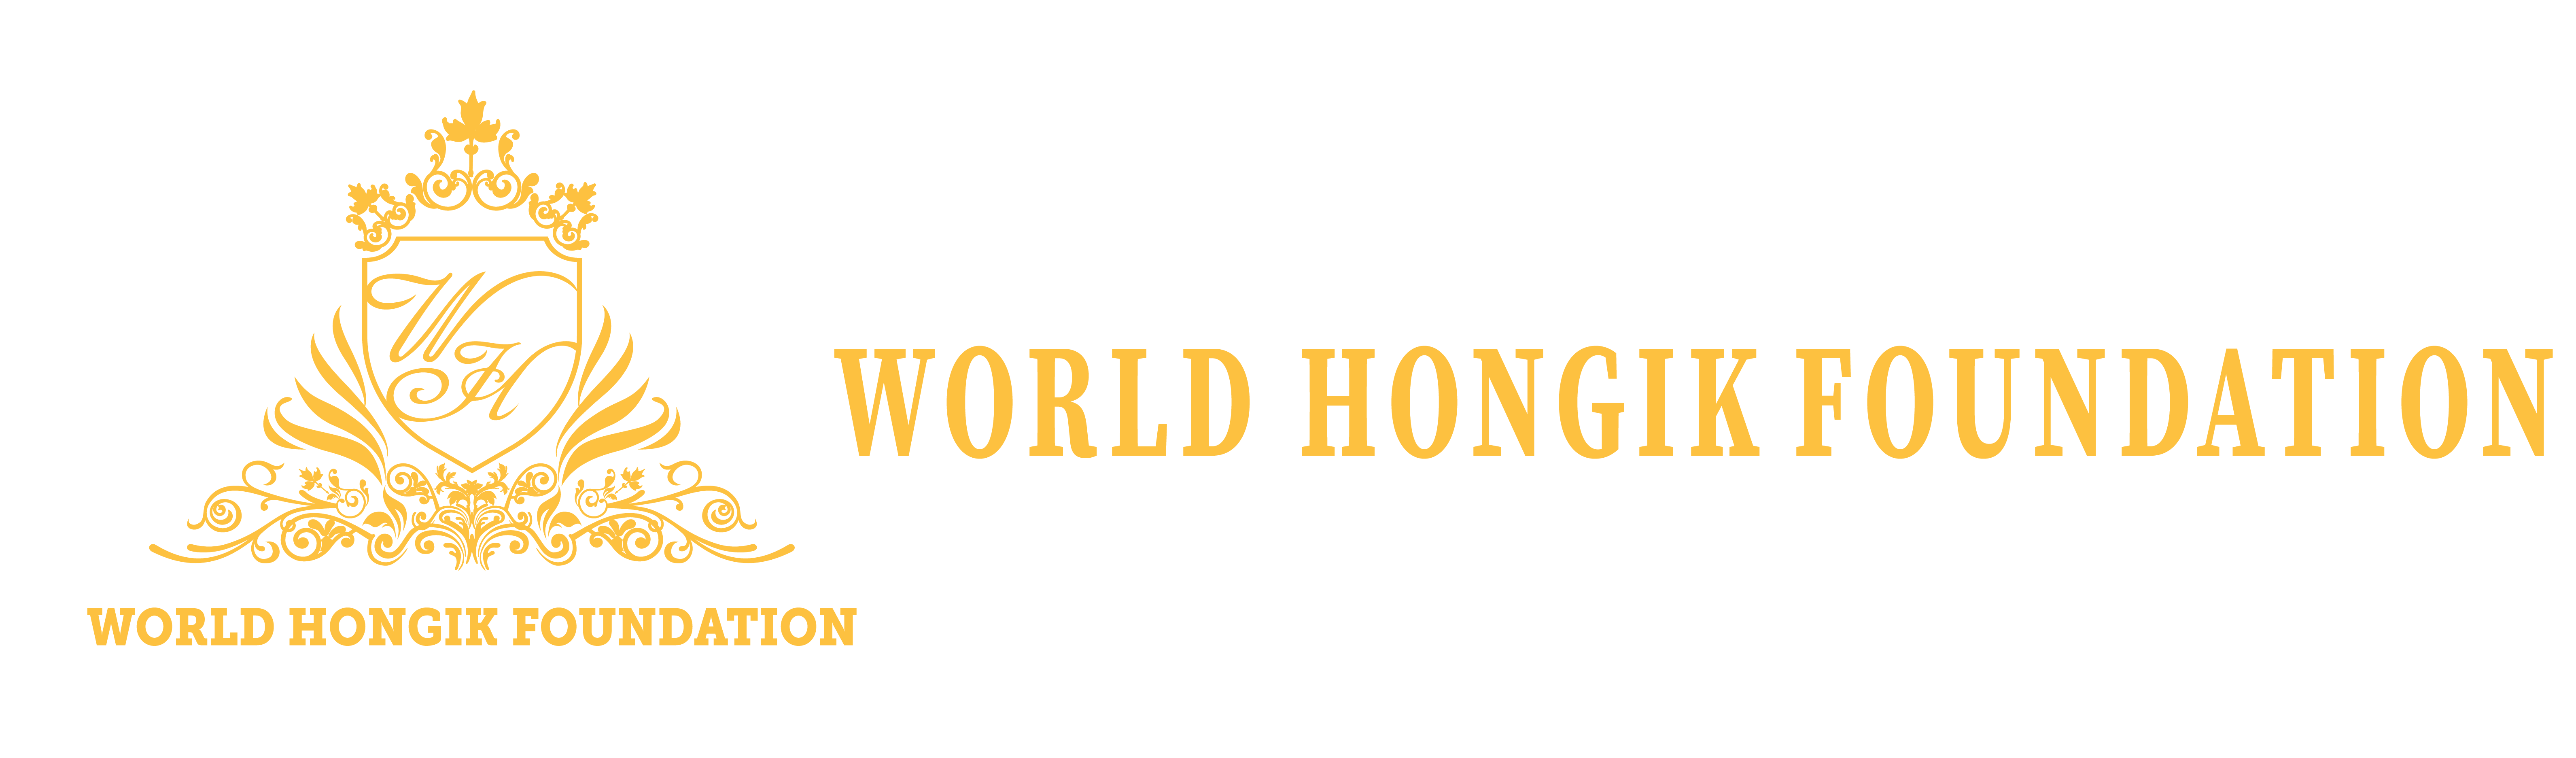 World Hongik Foundation logo